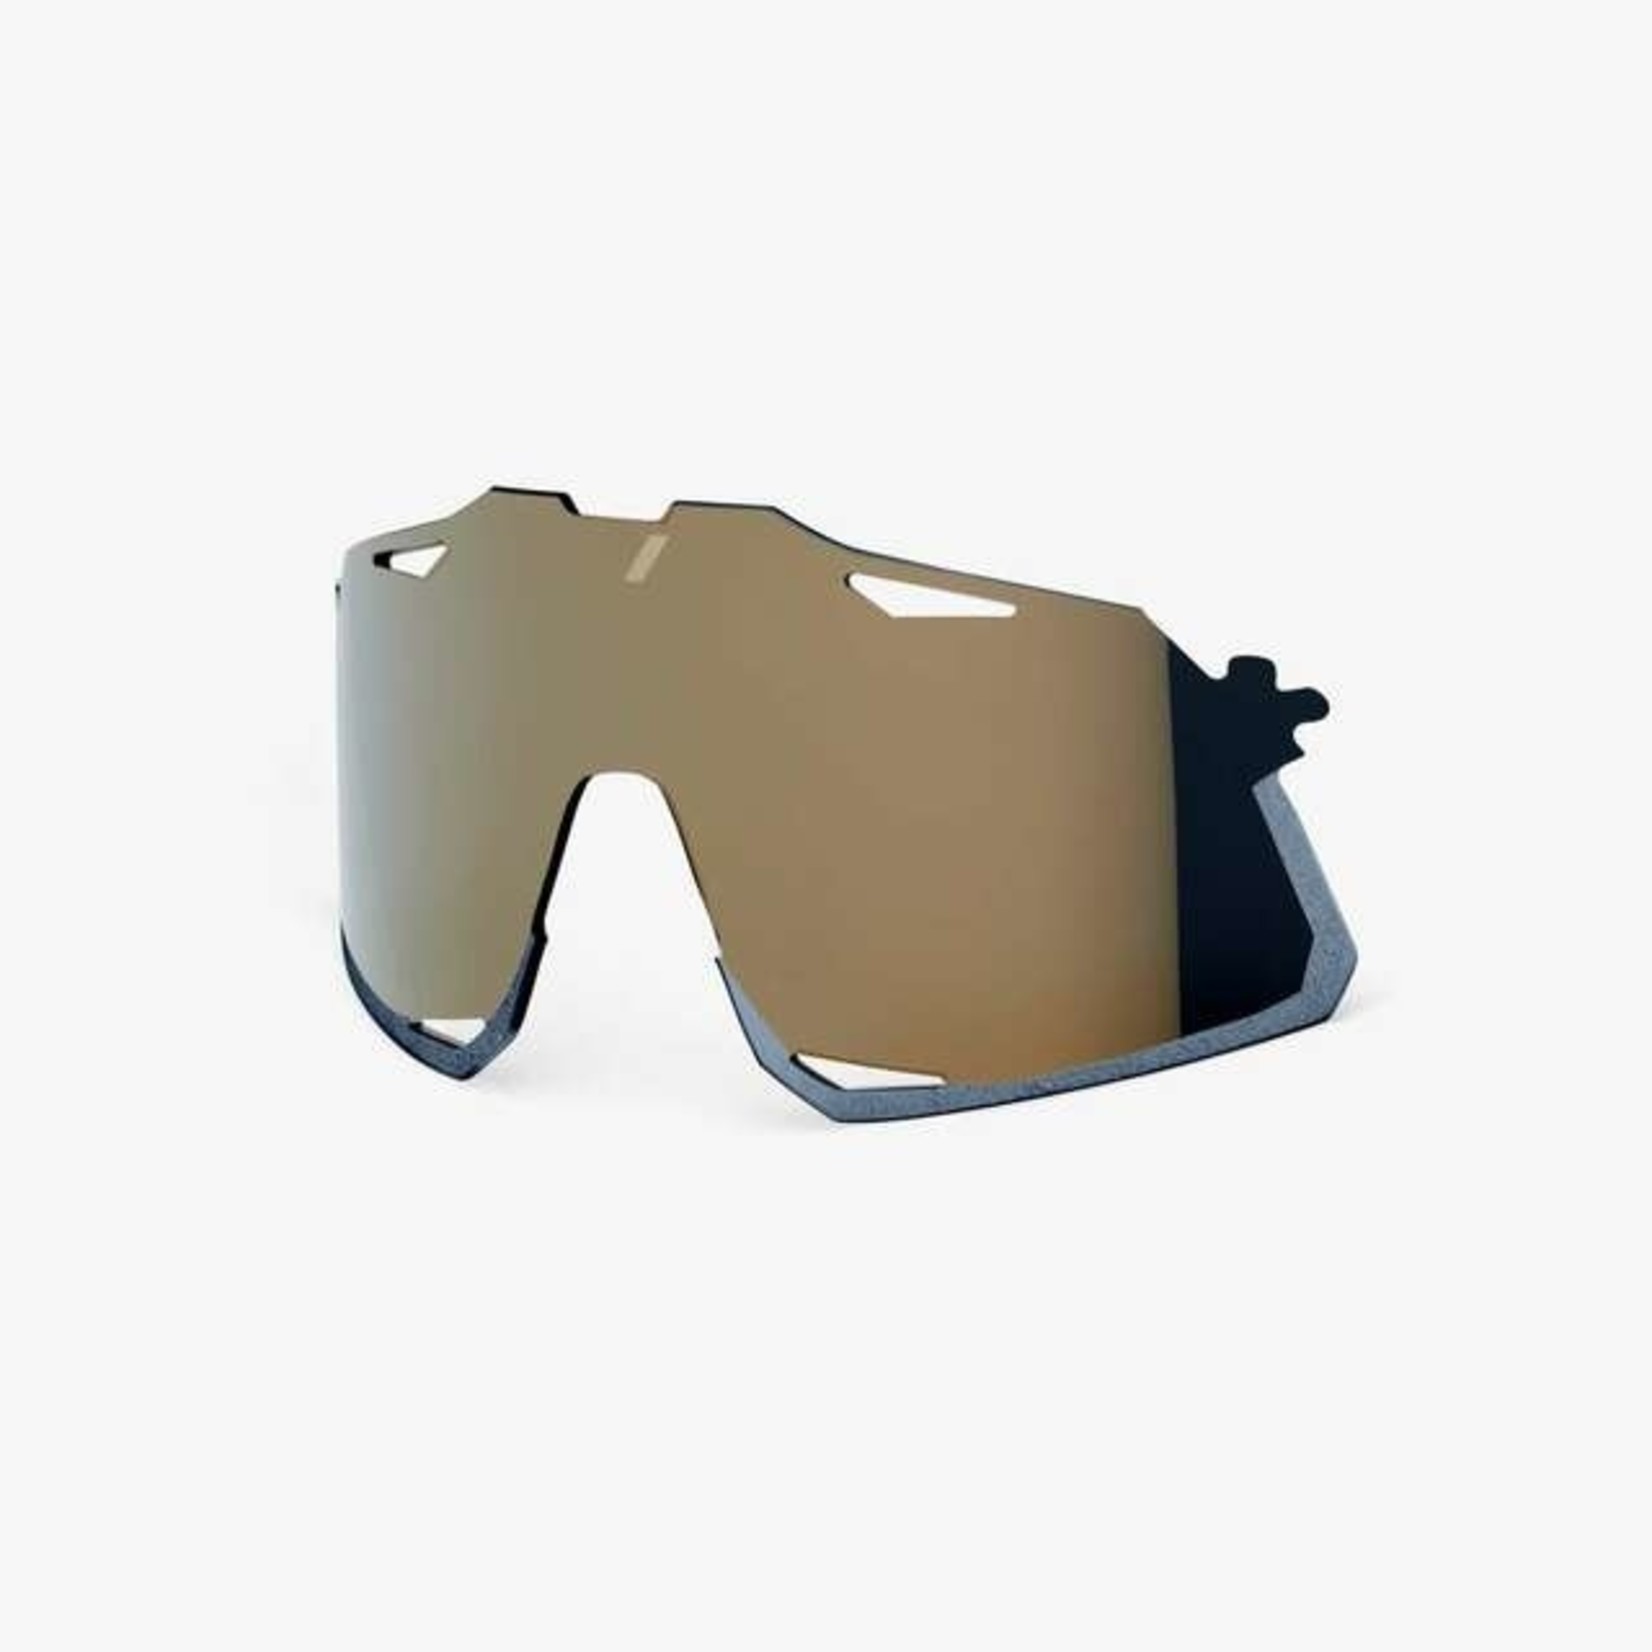 100 Percent 100% Hypercraft Bike Sunglasses Replacement Lens - Soft Gold Mirror